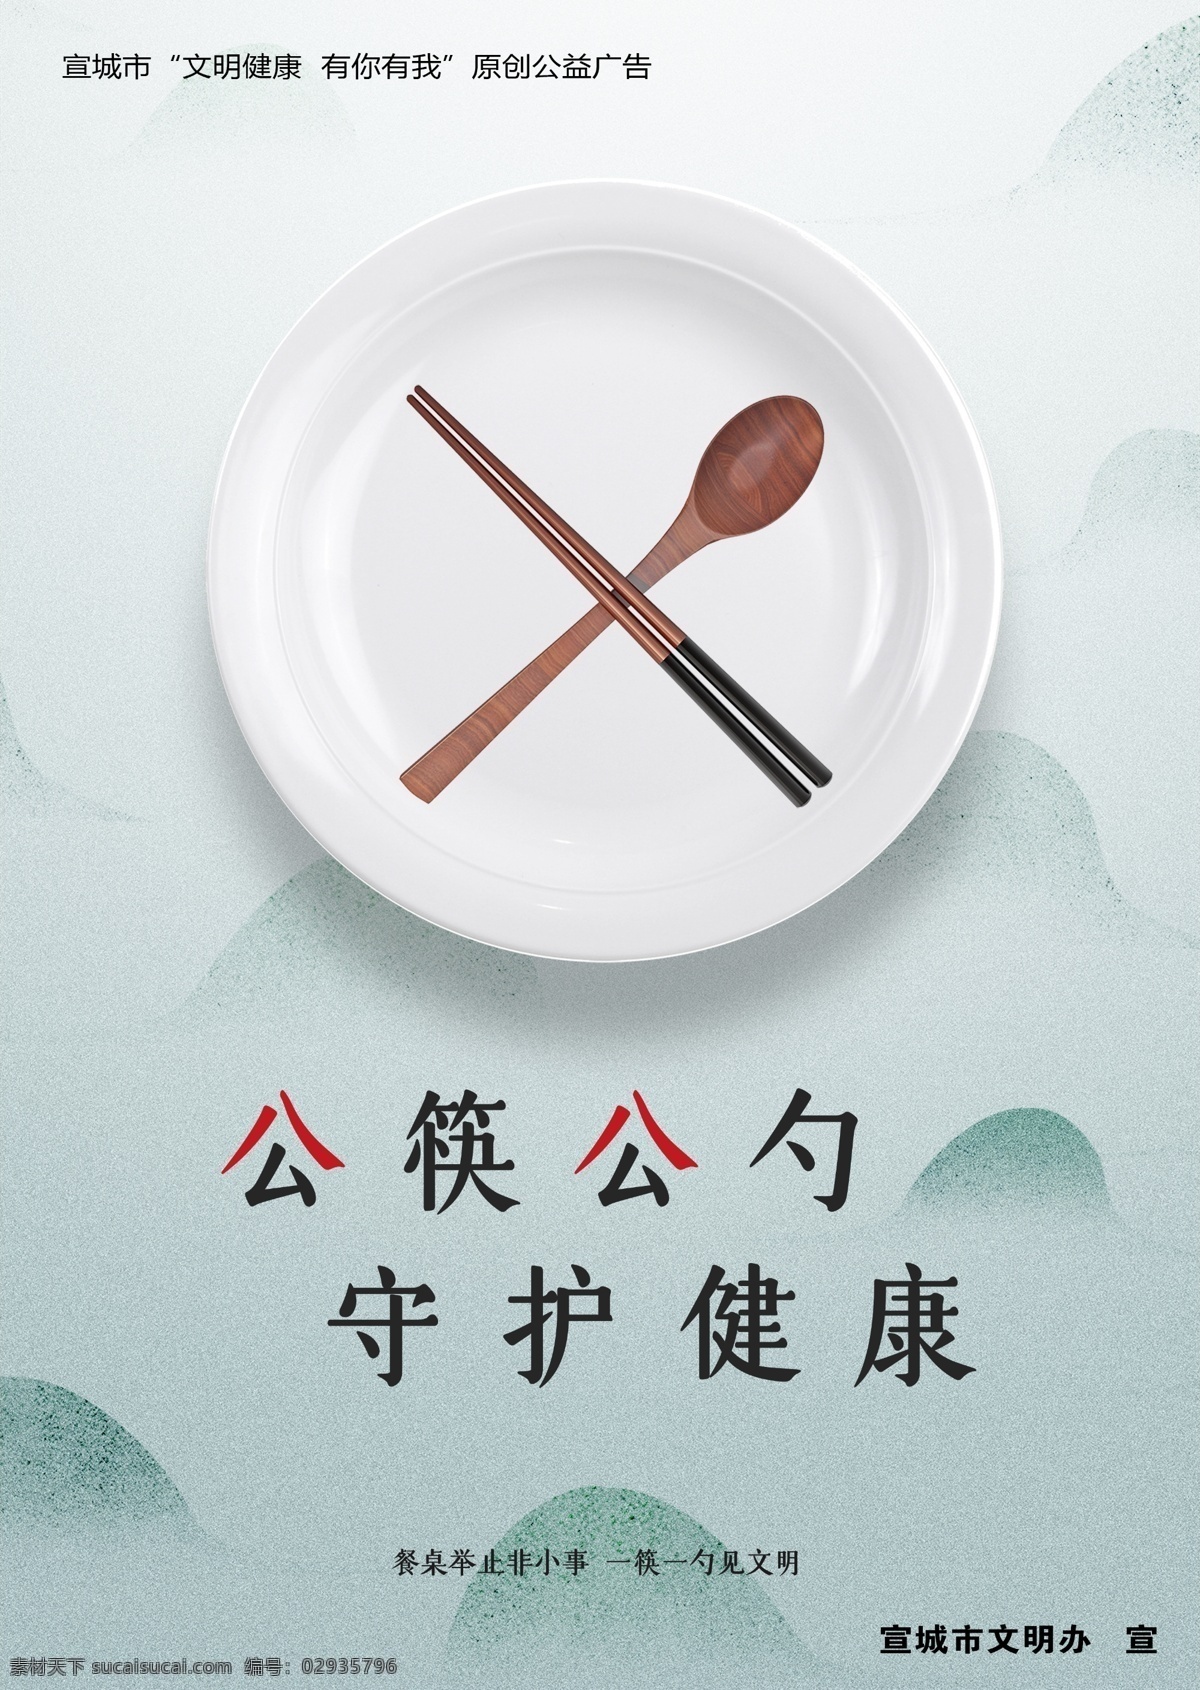 公勺公筷 餐桌文明 健康 公勺 公筷 餐桌 文明